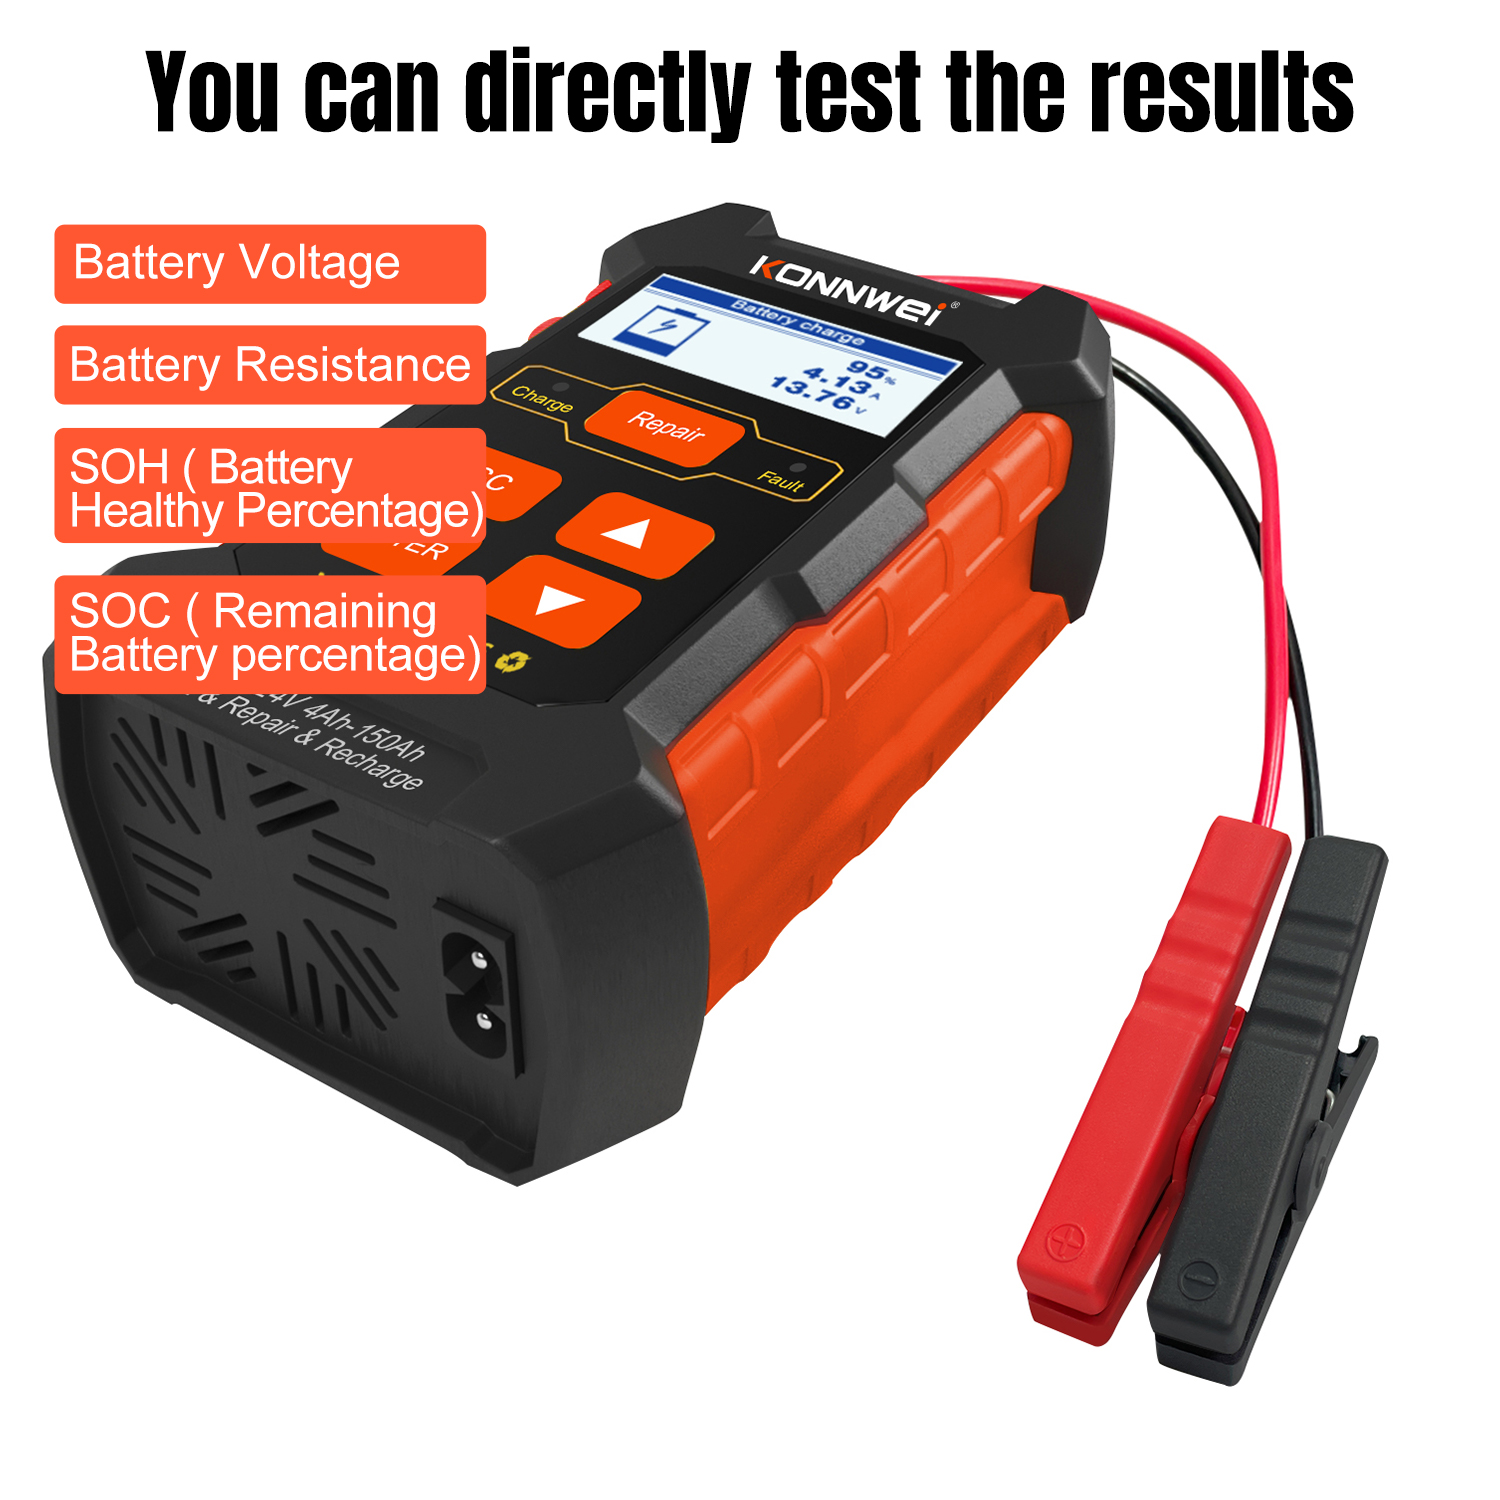 Tester batérií Konnwei KW520